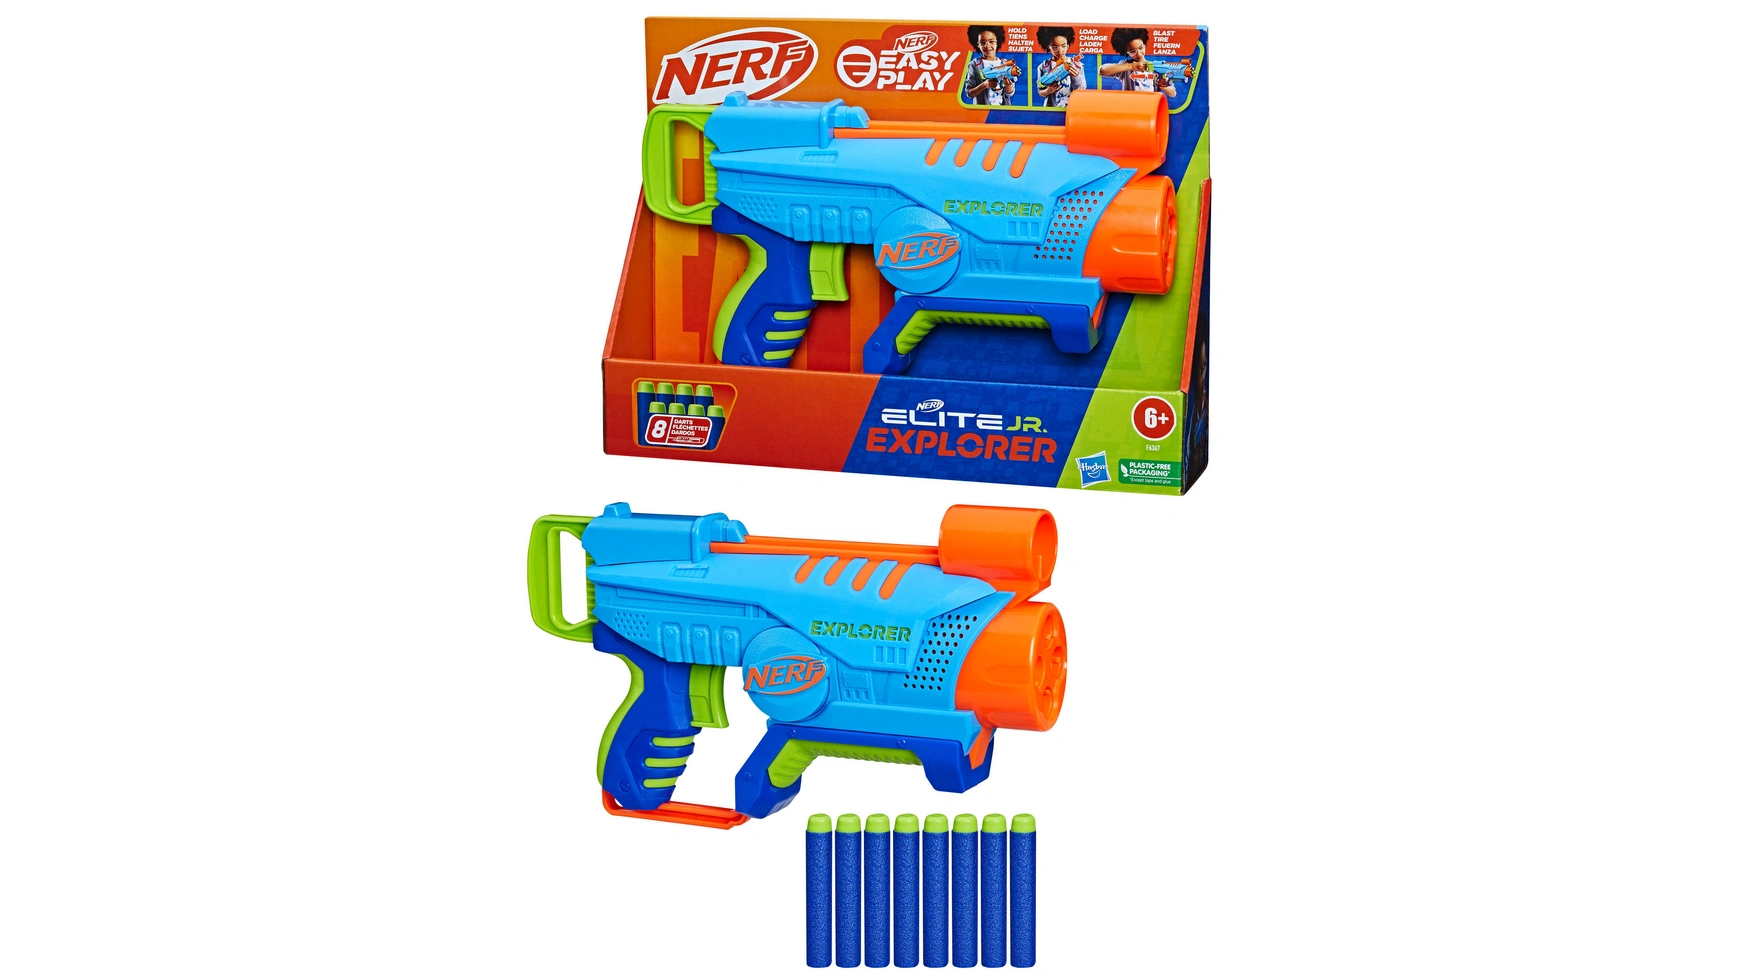 Hasbro Nerf Elite Jr Explorer новые оранжевые пули на присоске для игрушечного пистолета nerf пули детские игрушки пенопластовые дротики для nerf серии бластеры подарок д